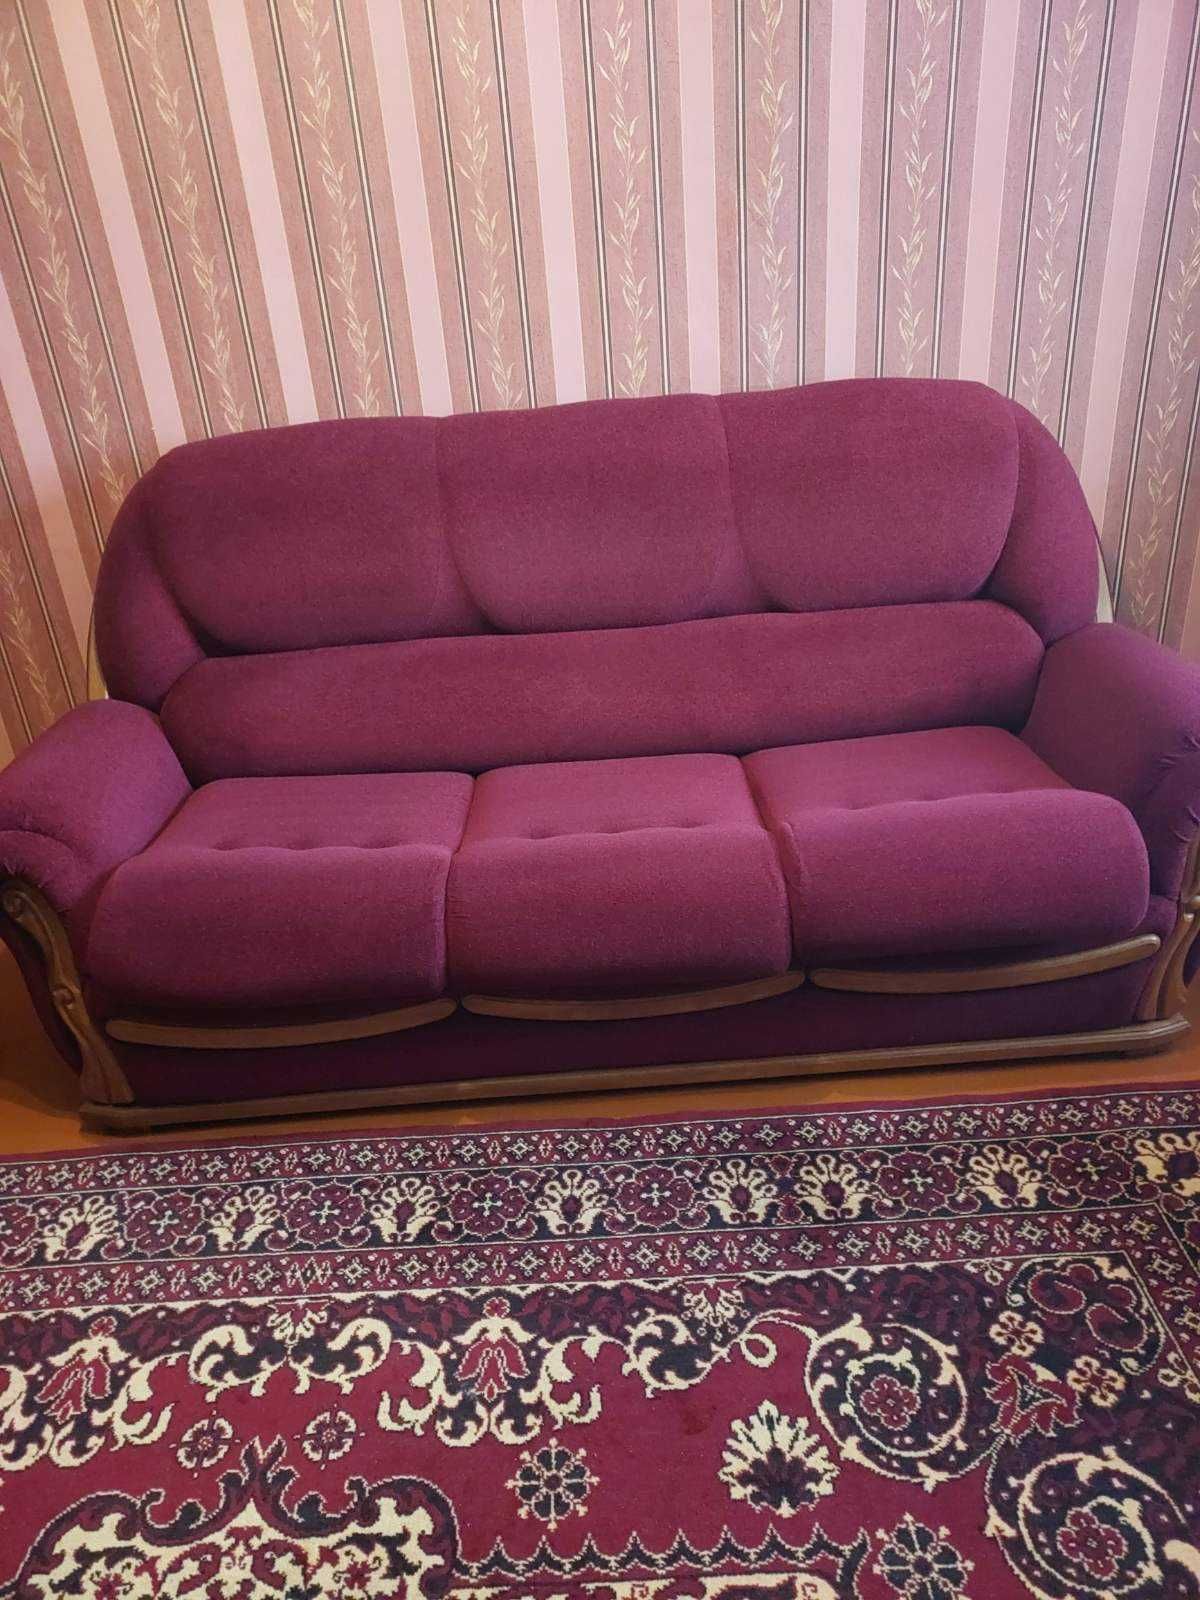 Добротный солидный шикарный диван и кресло в идеале.доставка.